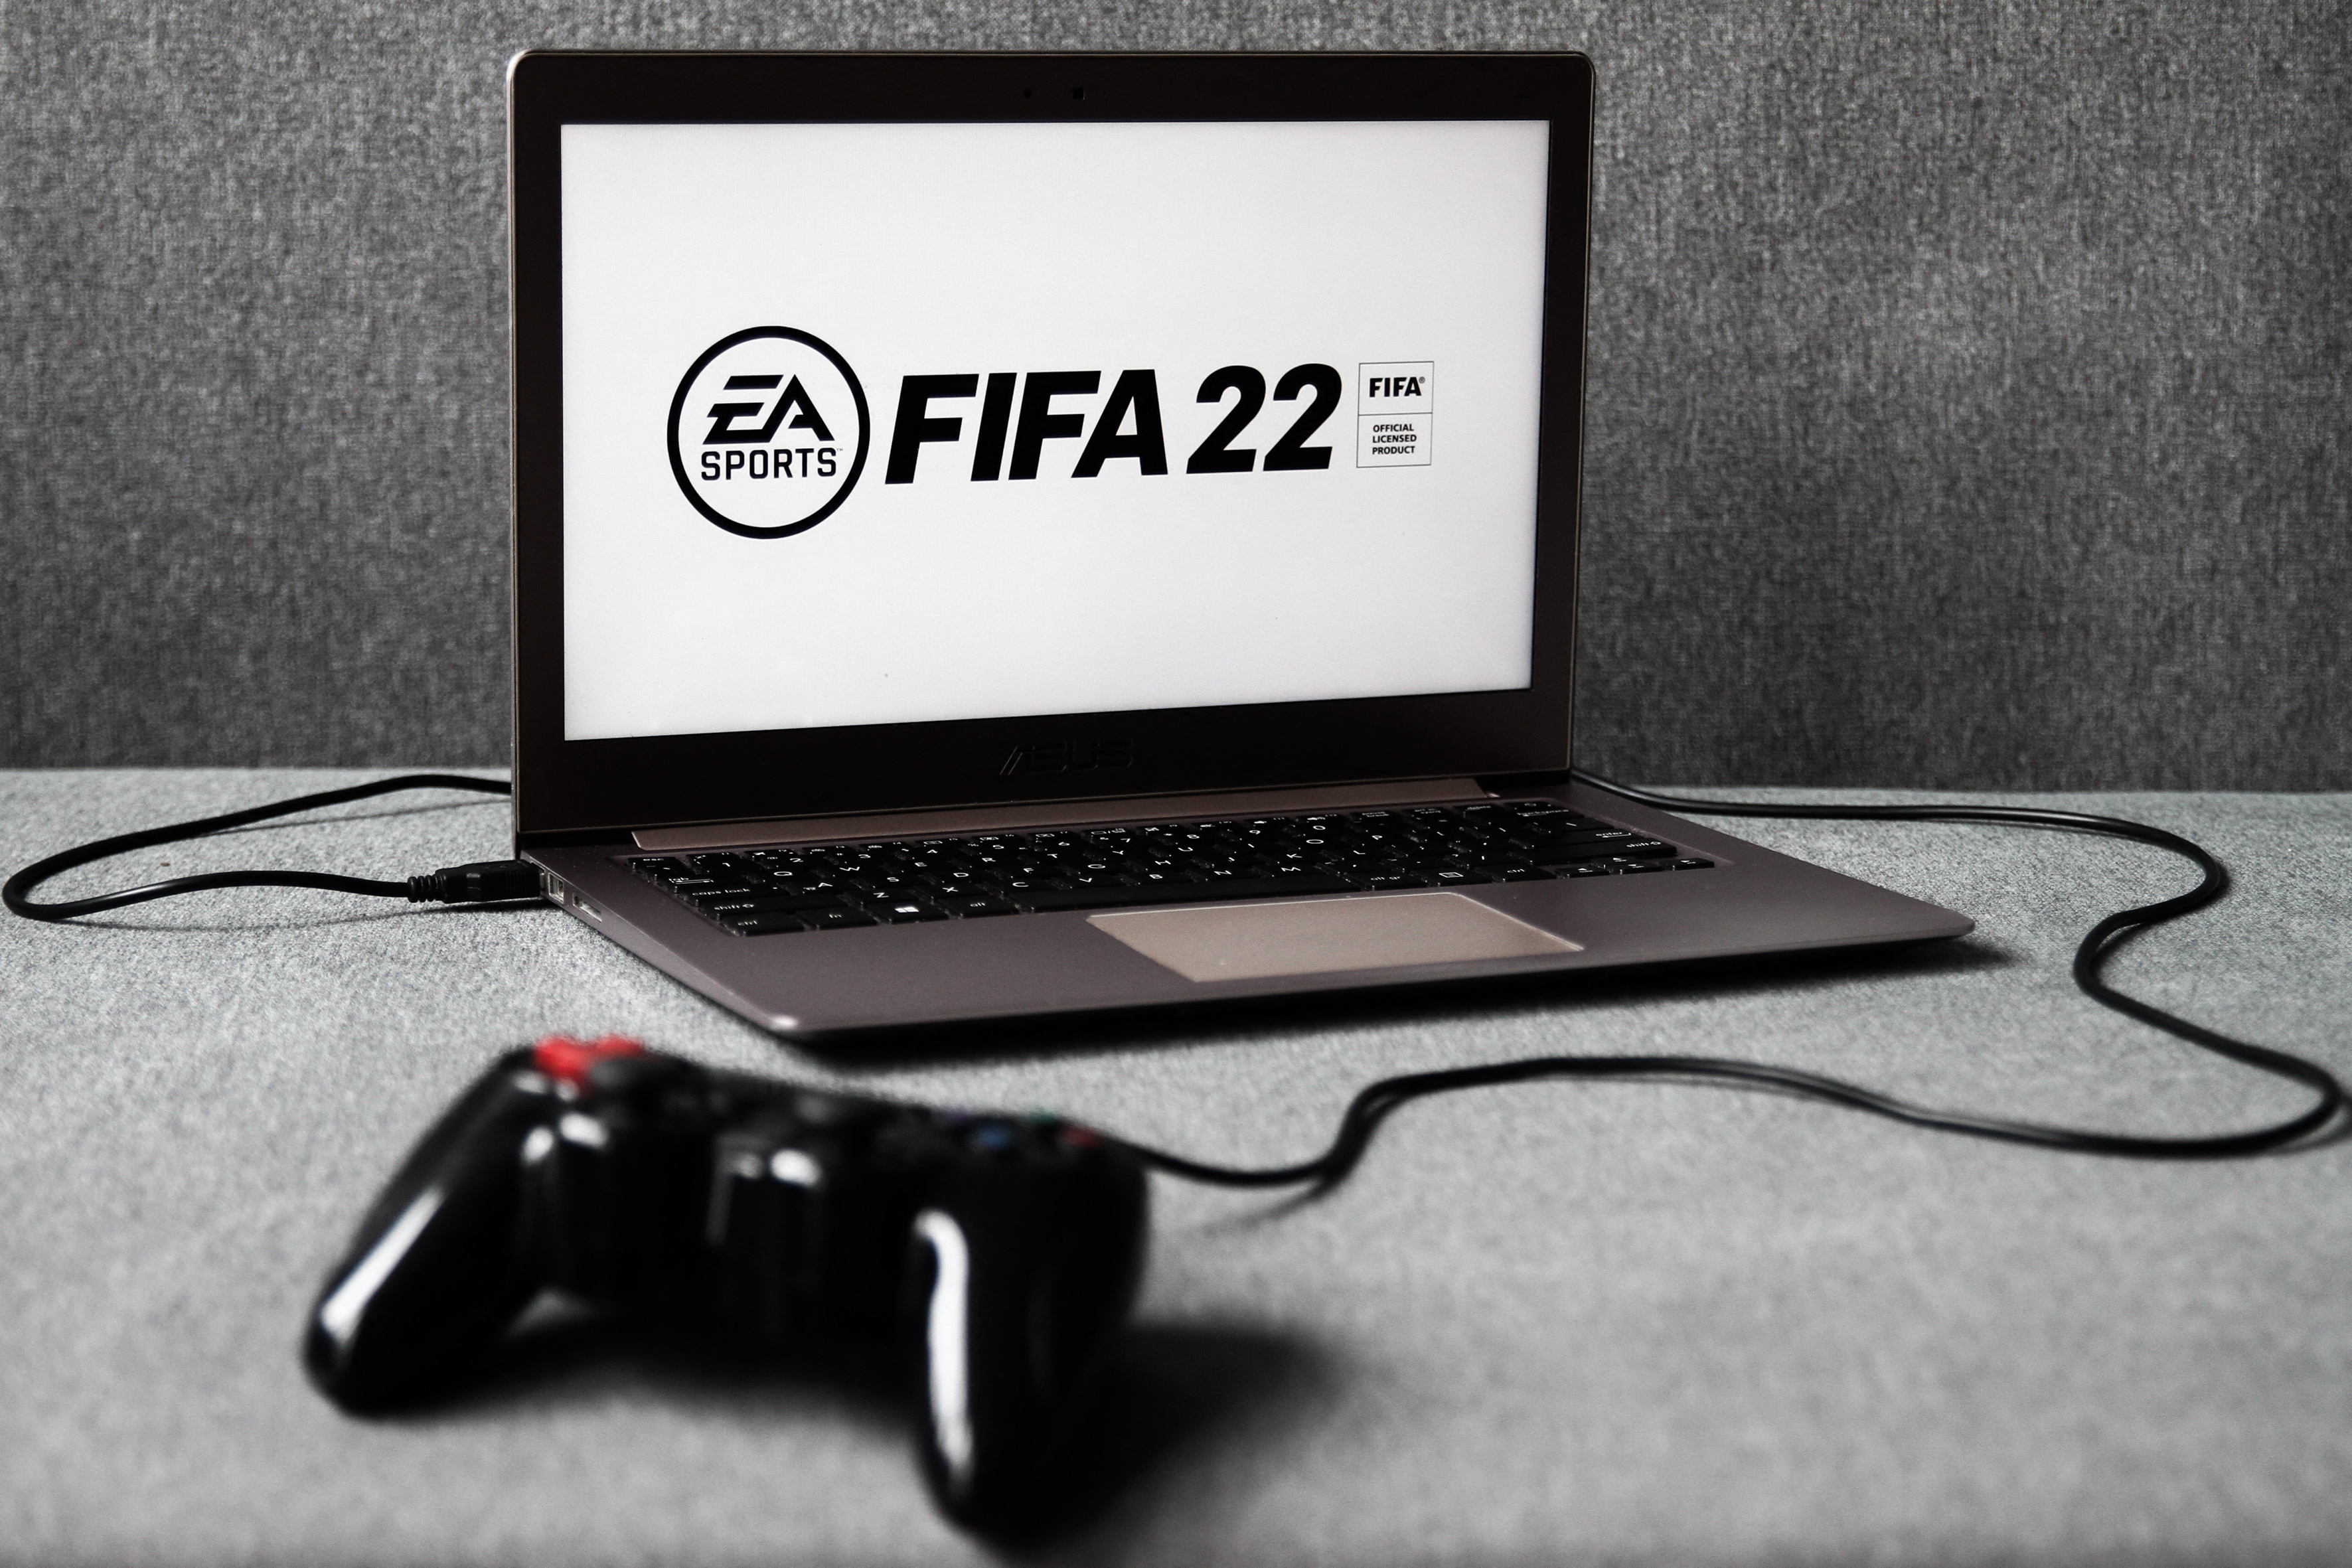 Egy korszak vége: befejezi a FIFA-focijátékok gyártását az EA Sports